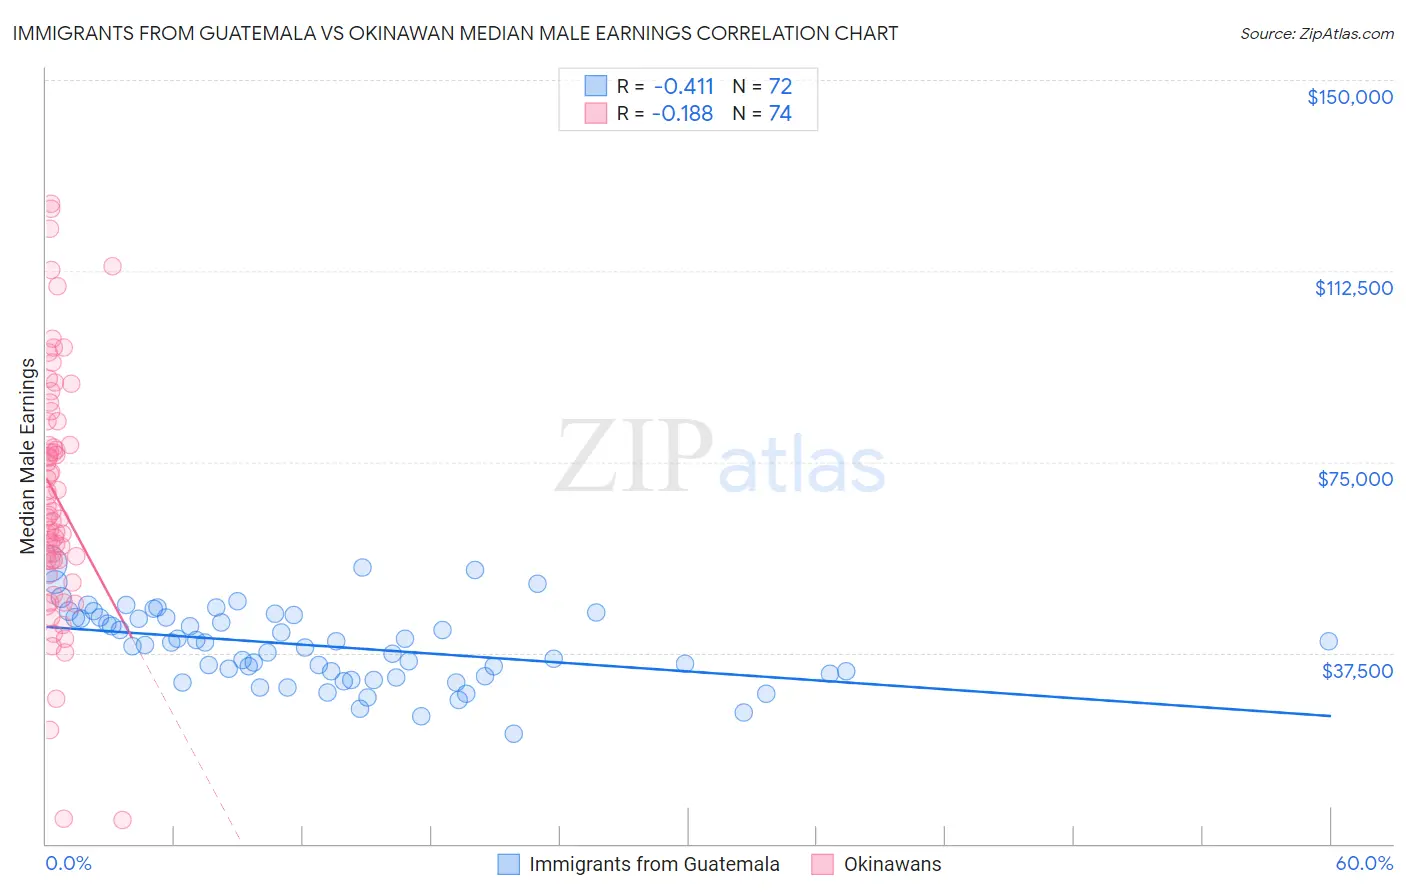 Immigrants from Guatemala vs Okinawan Median Male Earnings